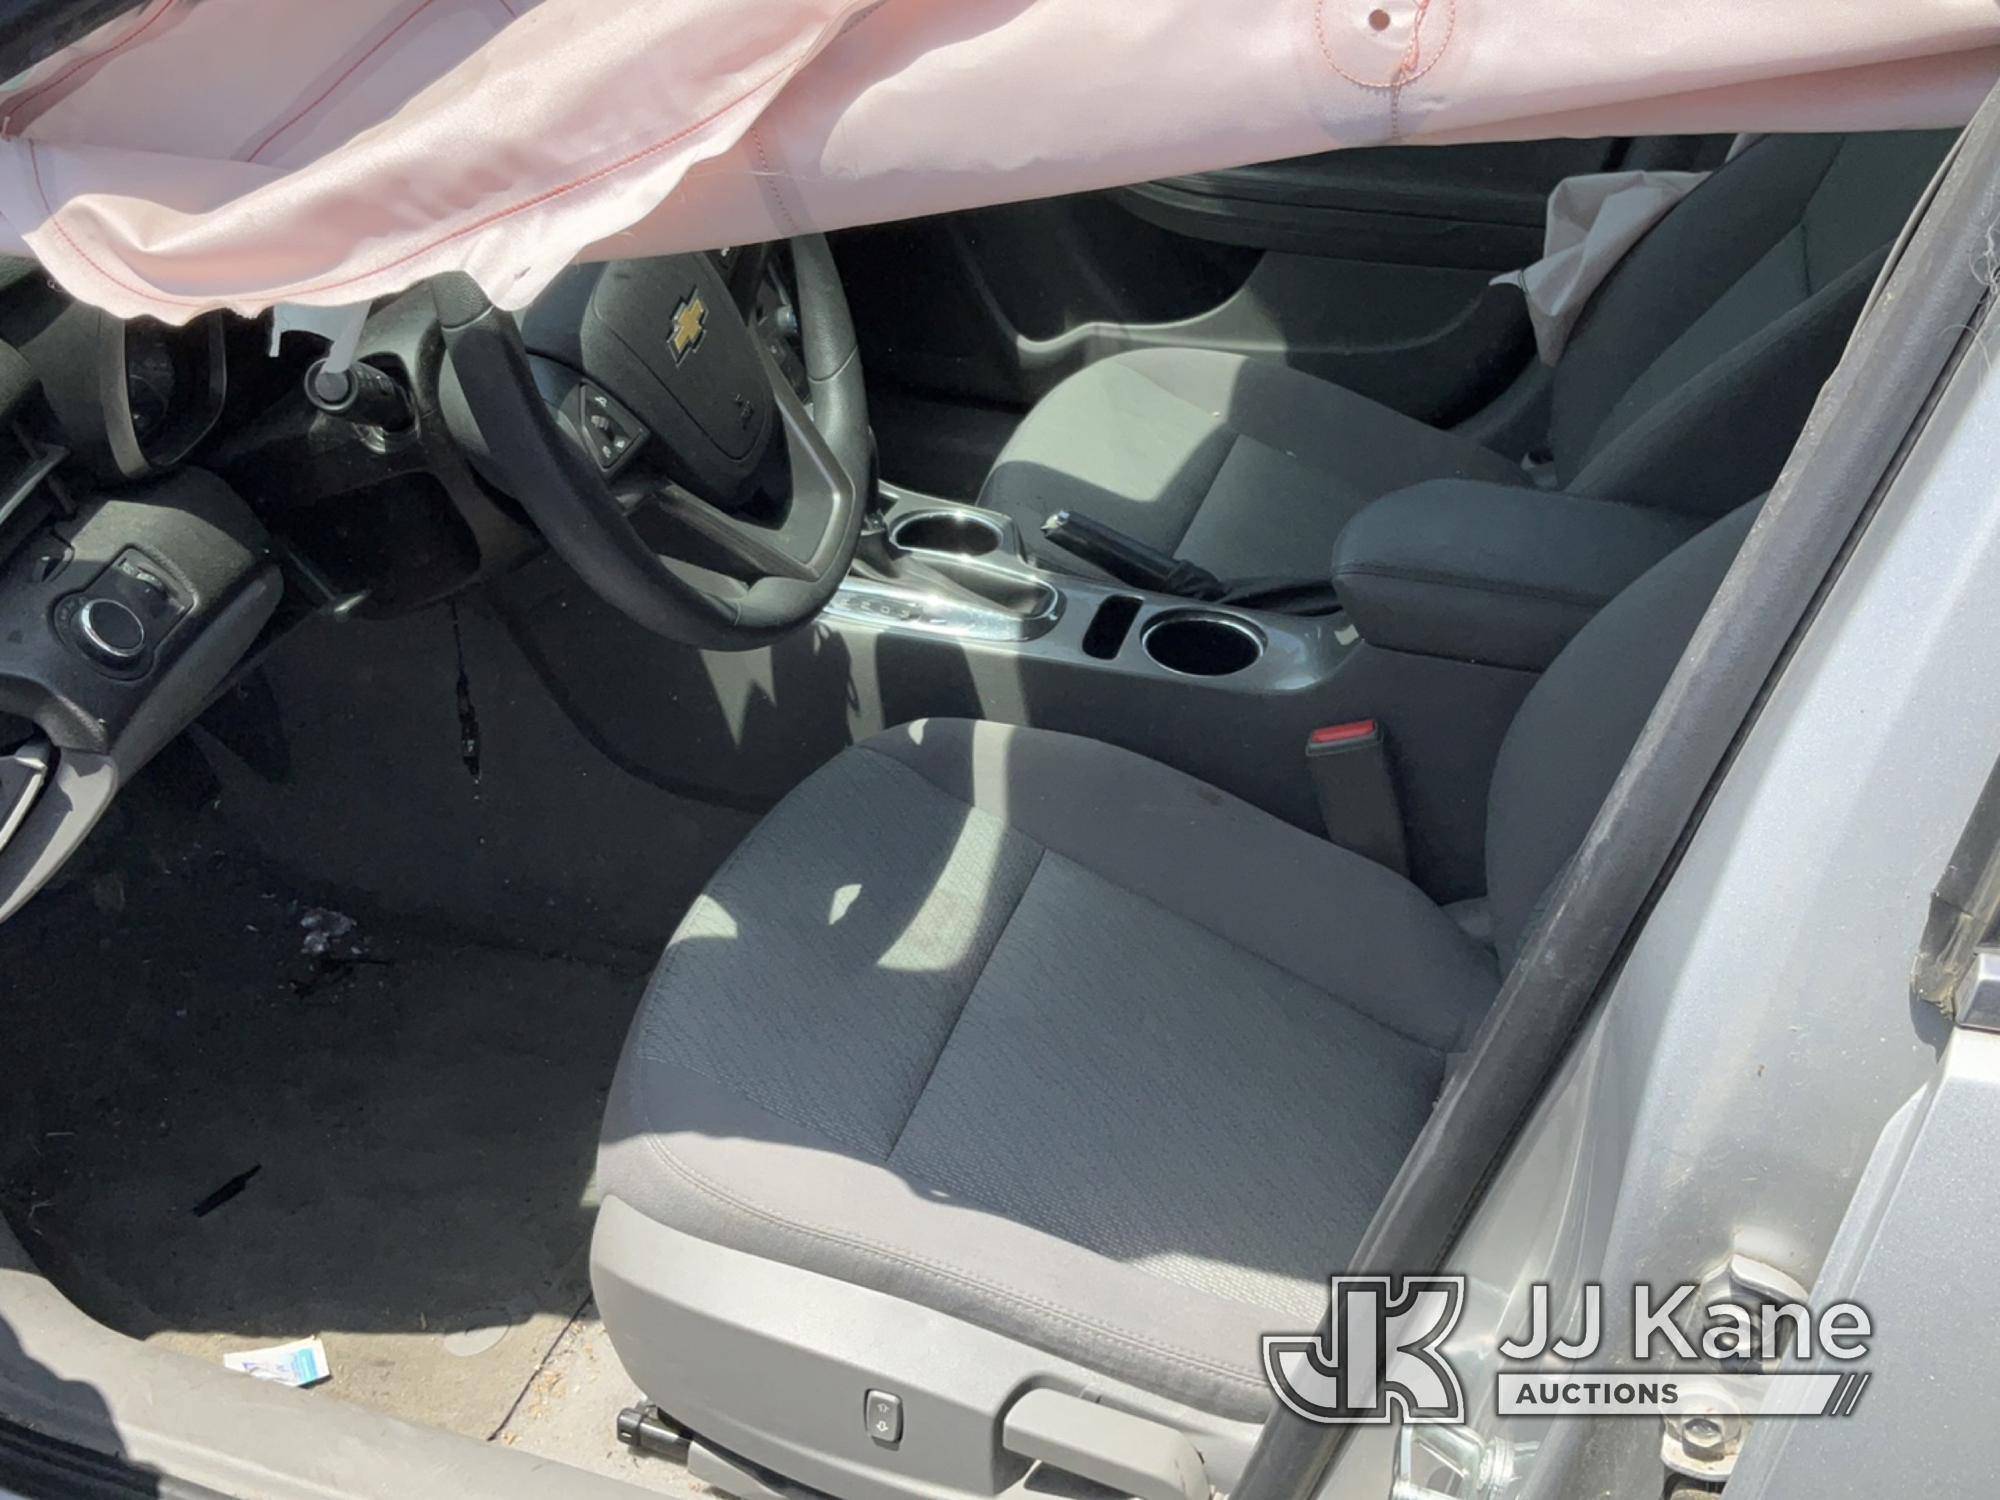 (Jurupa Valley, CA) 2015 Chevrolet Malibu LS 4-Door Sedan Not Running , Wrecked, Paint Damage, Body